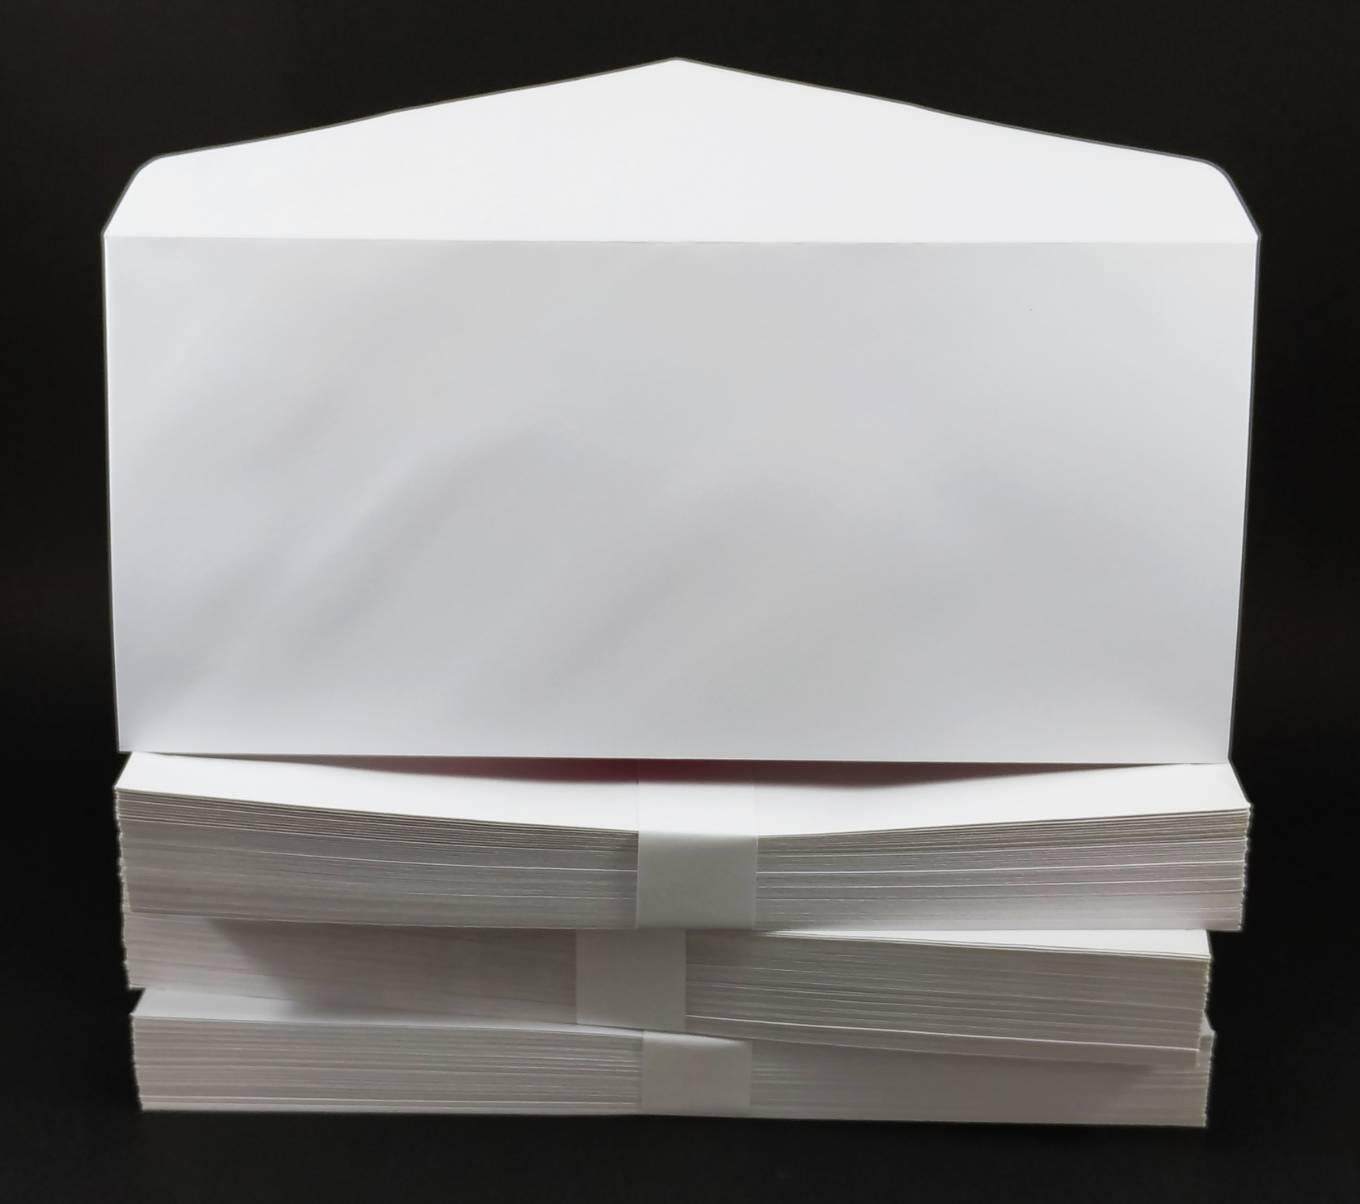 ซองจดหมายสีขาว เบอร์ 9 ขนาดมาตรฐาน 10.8x23 ซม. จำนวน 500 ใบ/กล่อง